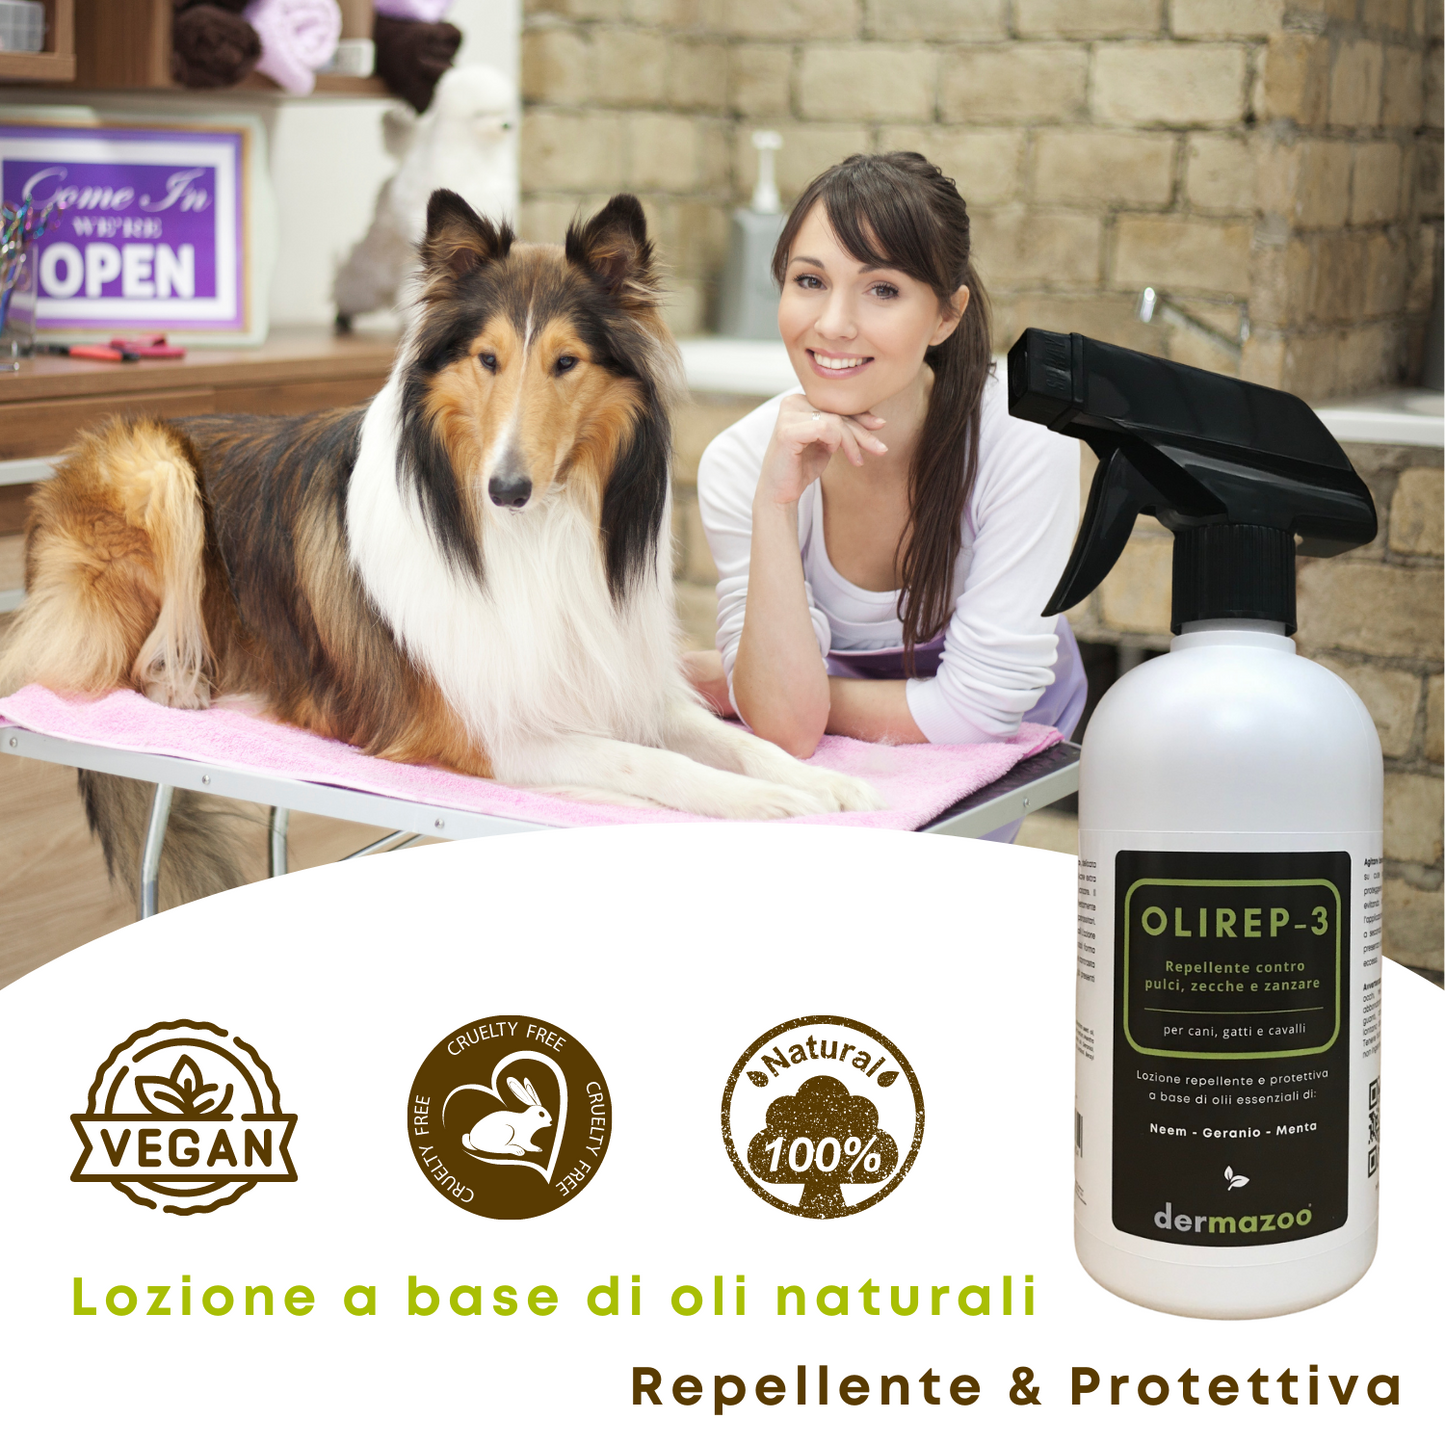 dermazoo - OLIREP-3 Repellente Spray naturale per cani con Oli essenziali